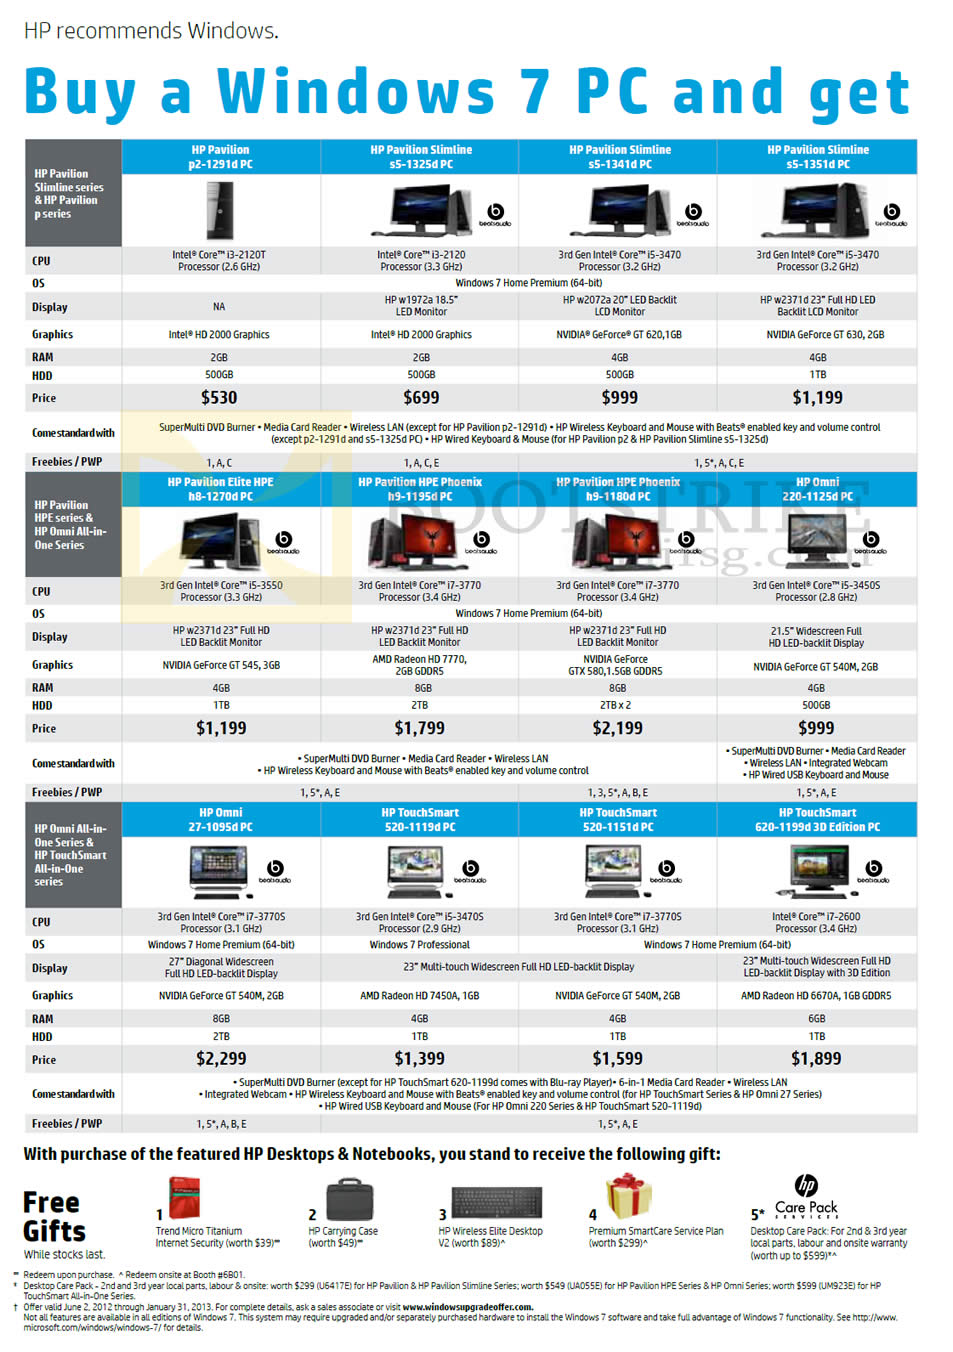 SITEX 2012 price list image brochure of HP Desktop PCs Pavilion Slimline S5-1325d, S5-1341d, S5-1351d, H8-1270d, H9-1195d, H9-1180d, 220-1125d, 27-1095d, S20-1119d, S20-1151d, 620-1199d